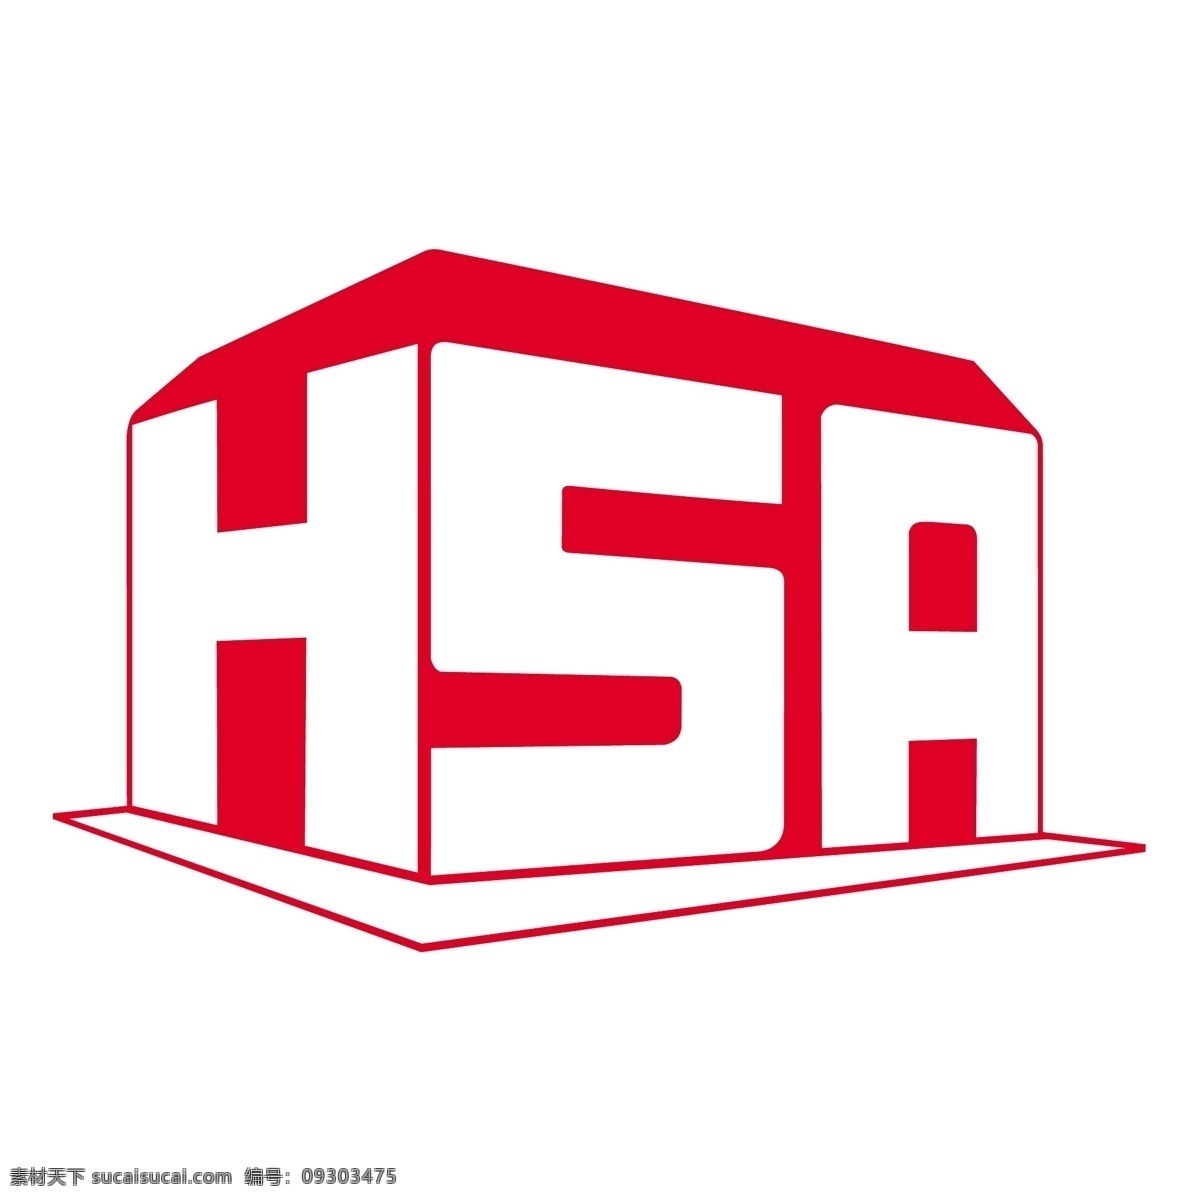 人 血清 白蛋白 hsa 标志 标识为免费 psd源文件 logo设计